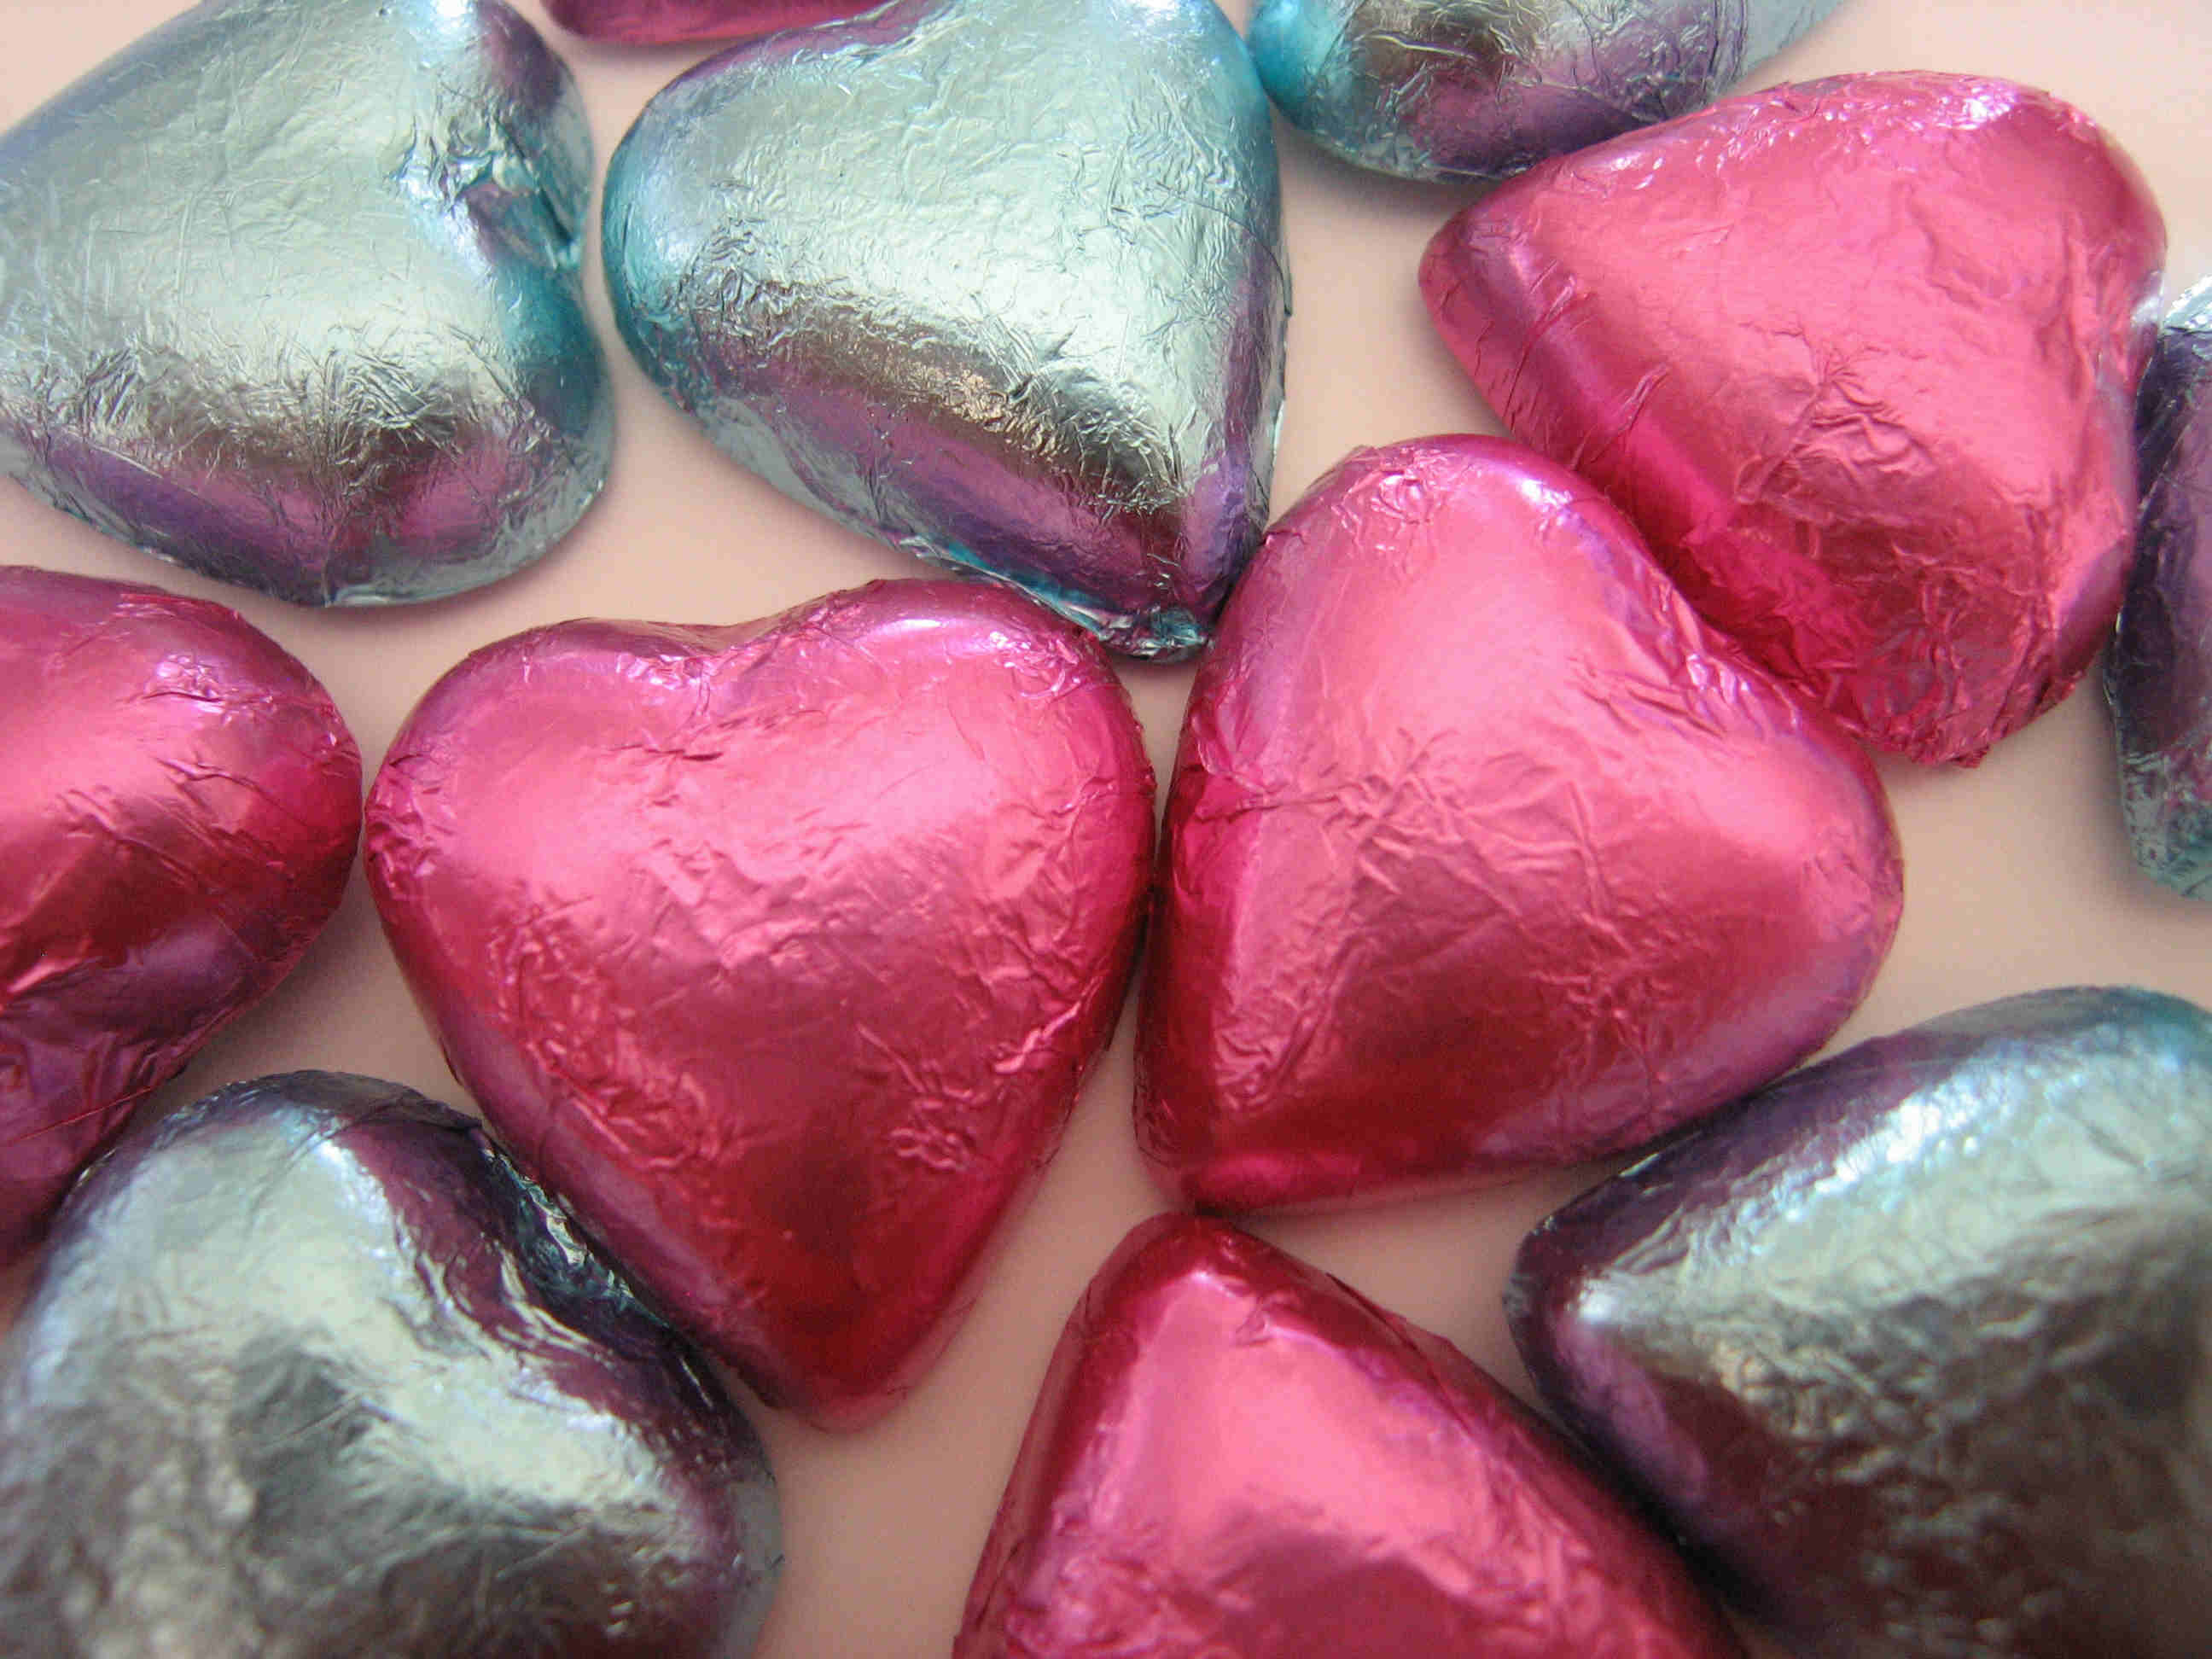 chocolate, hearts - desktop wallpaper